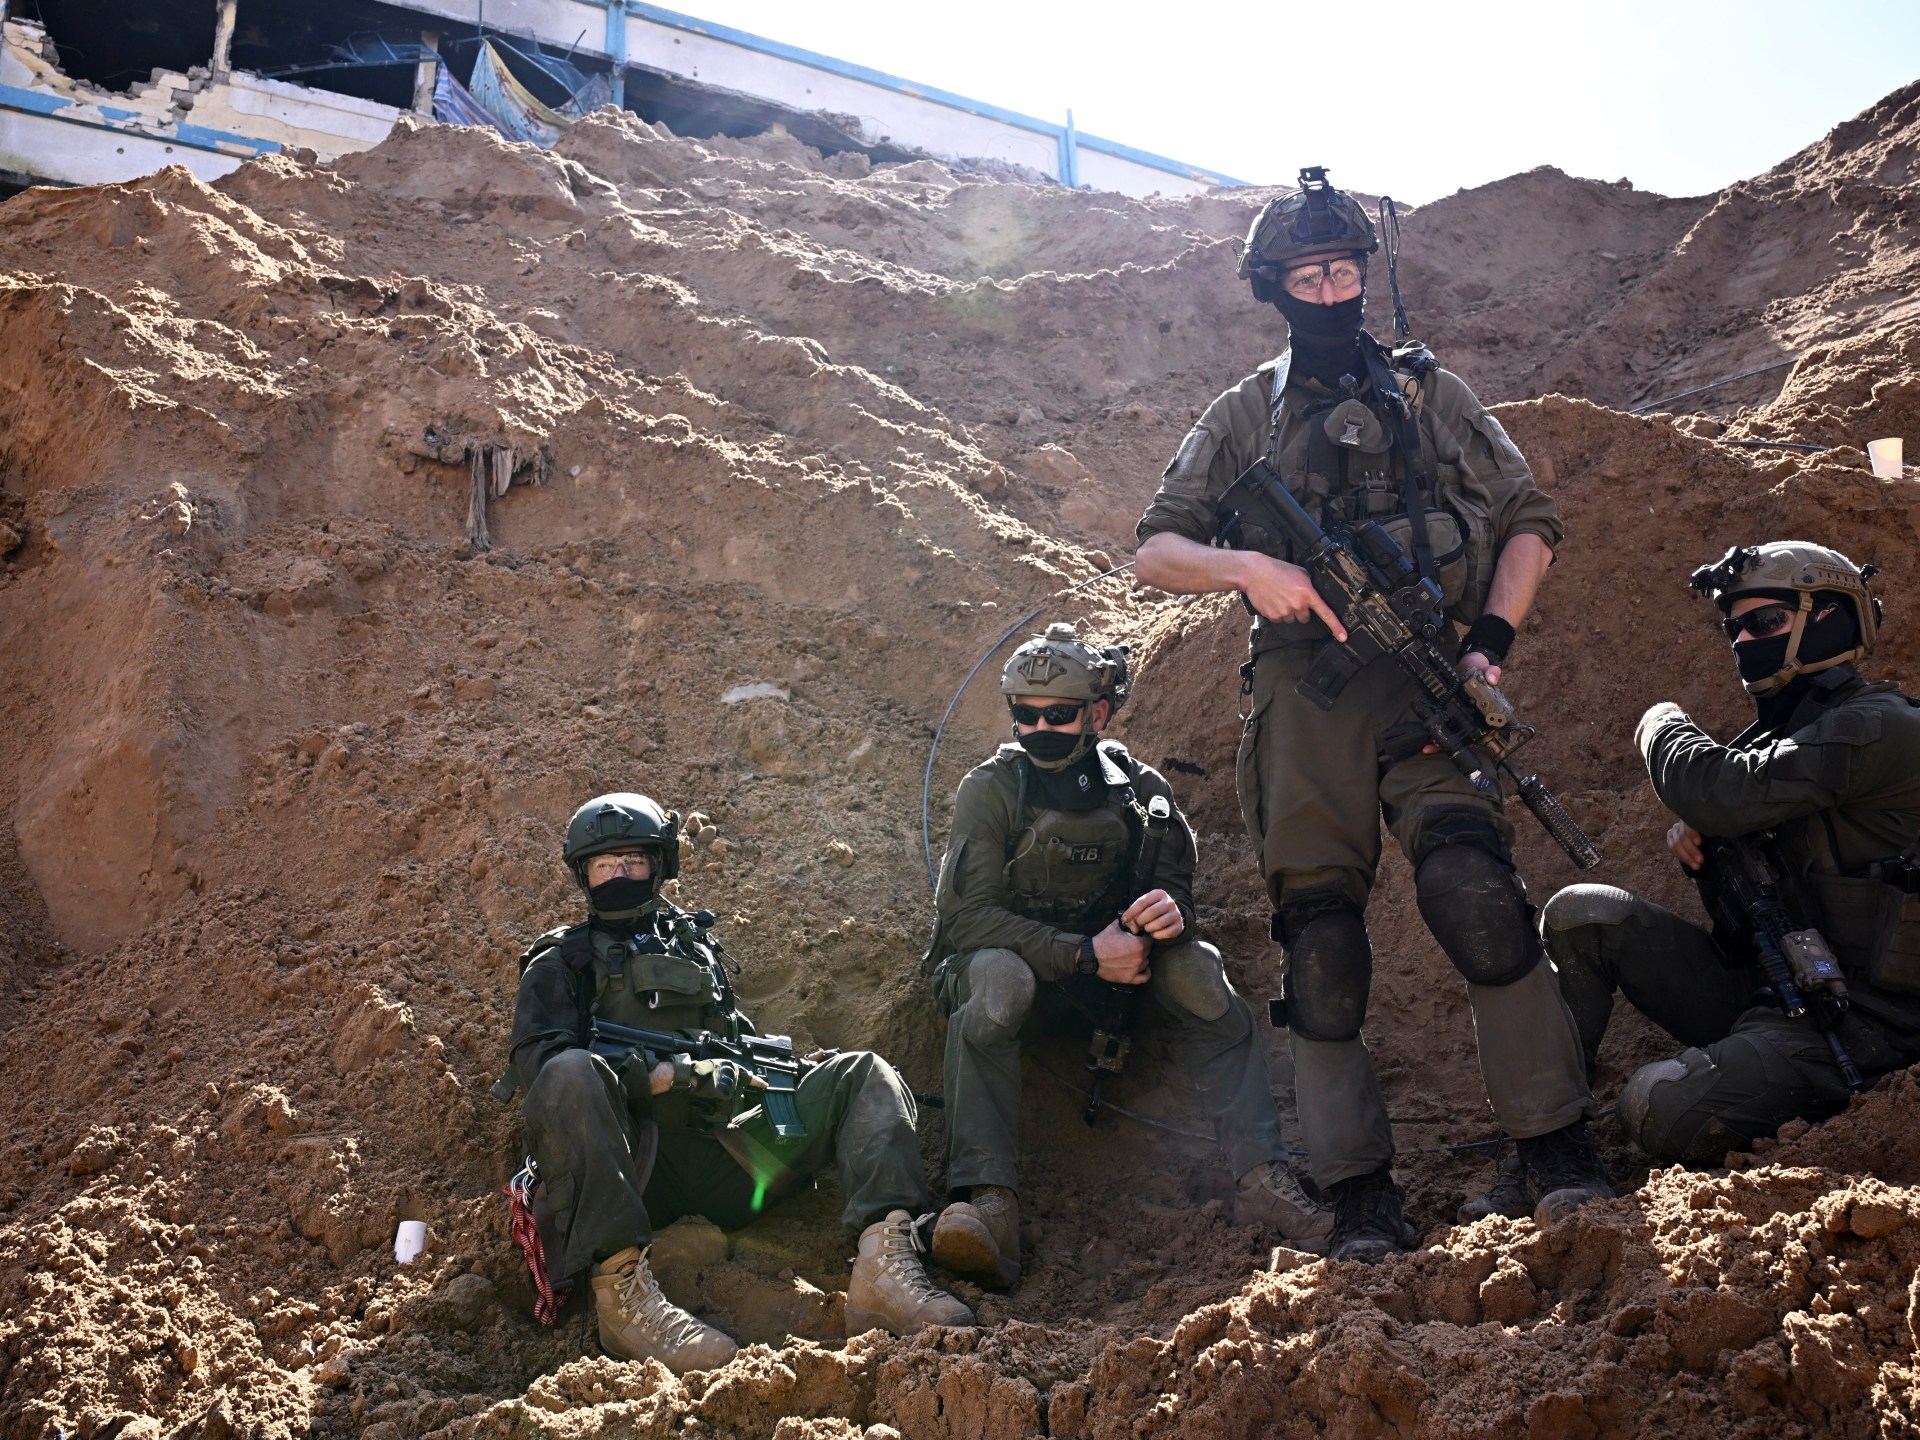 هآرتس: مقتل فريق الإغاثة بسبب سلوك الضباط الإسرائيليين وليس غياب التنسيق | أخبار – البوكس نيوز